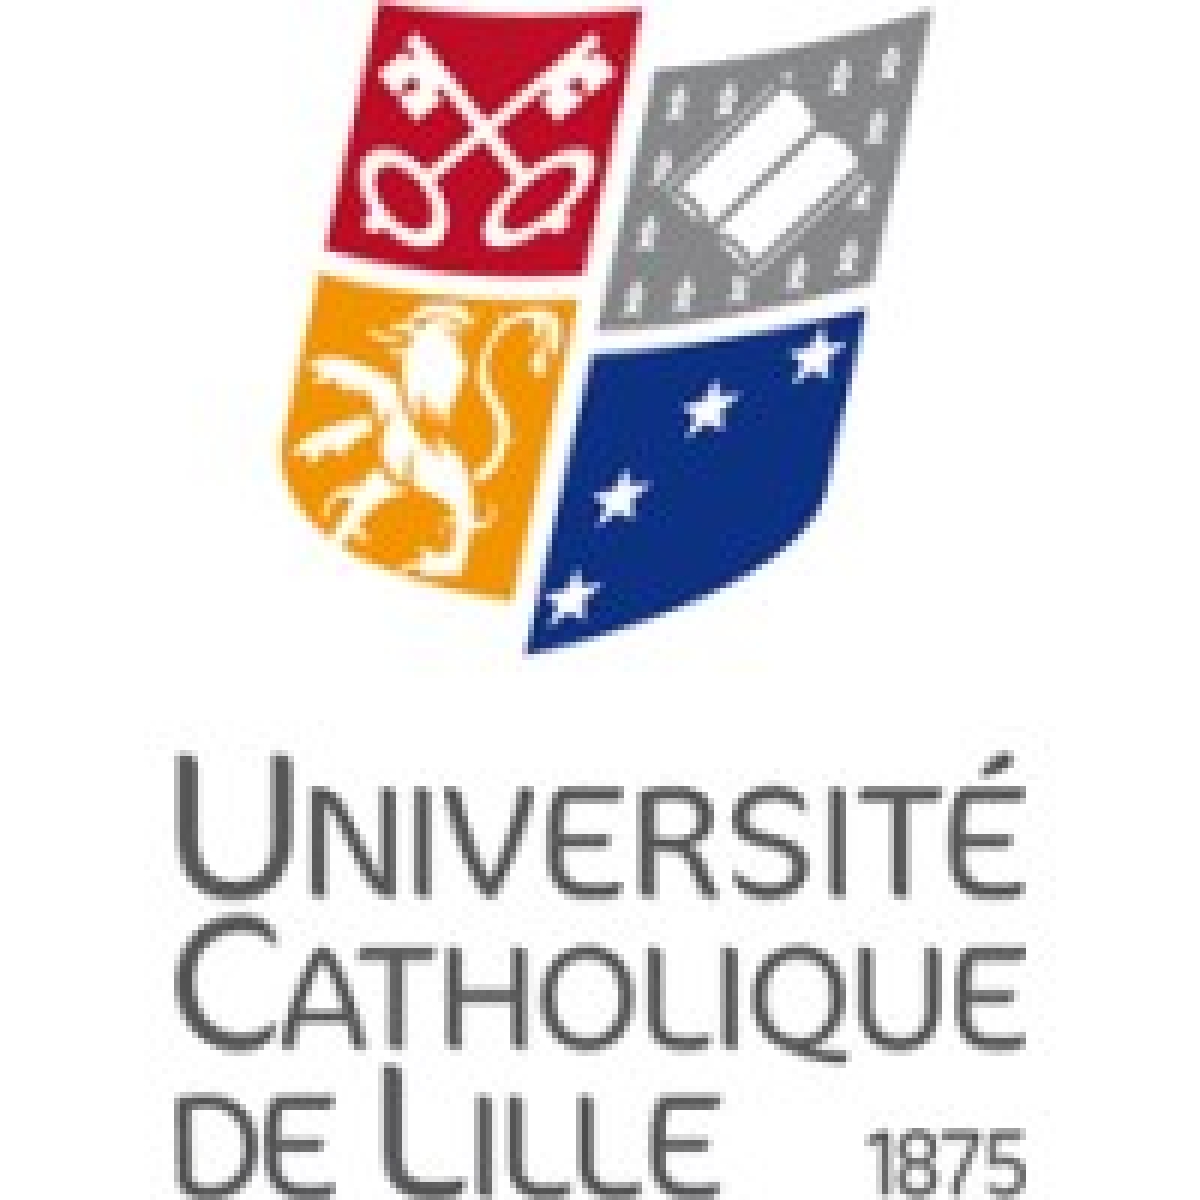 UNIVERSITE CATHOLIQUE DE LILLE